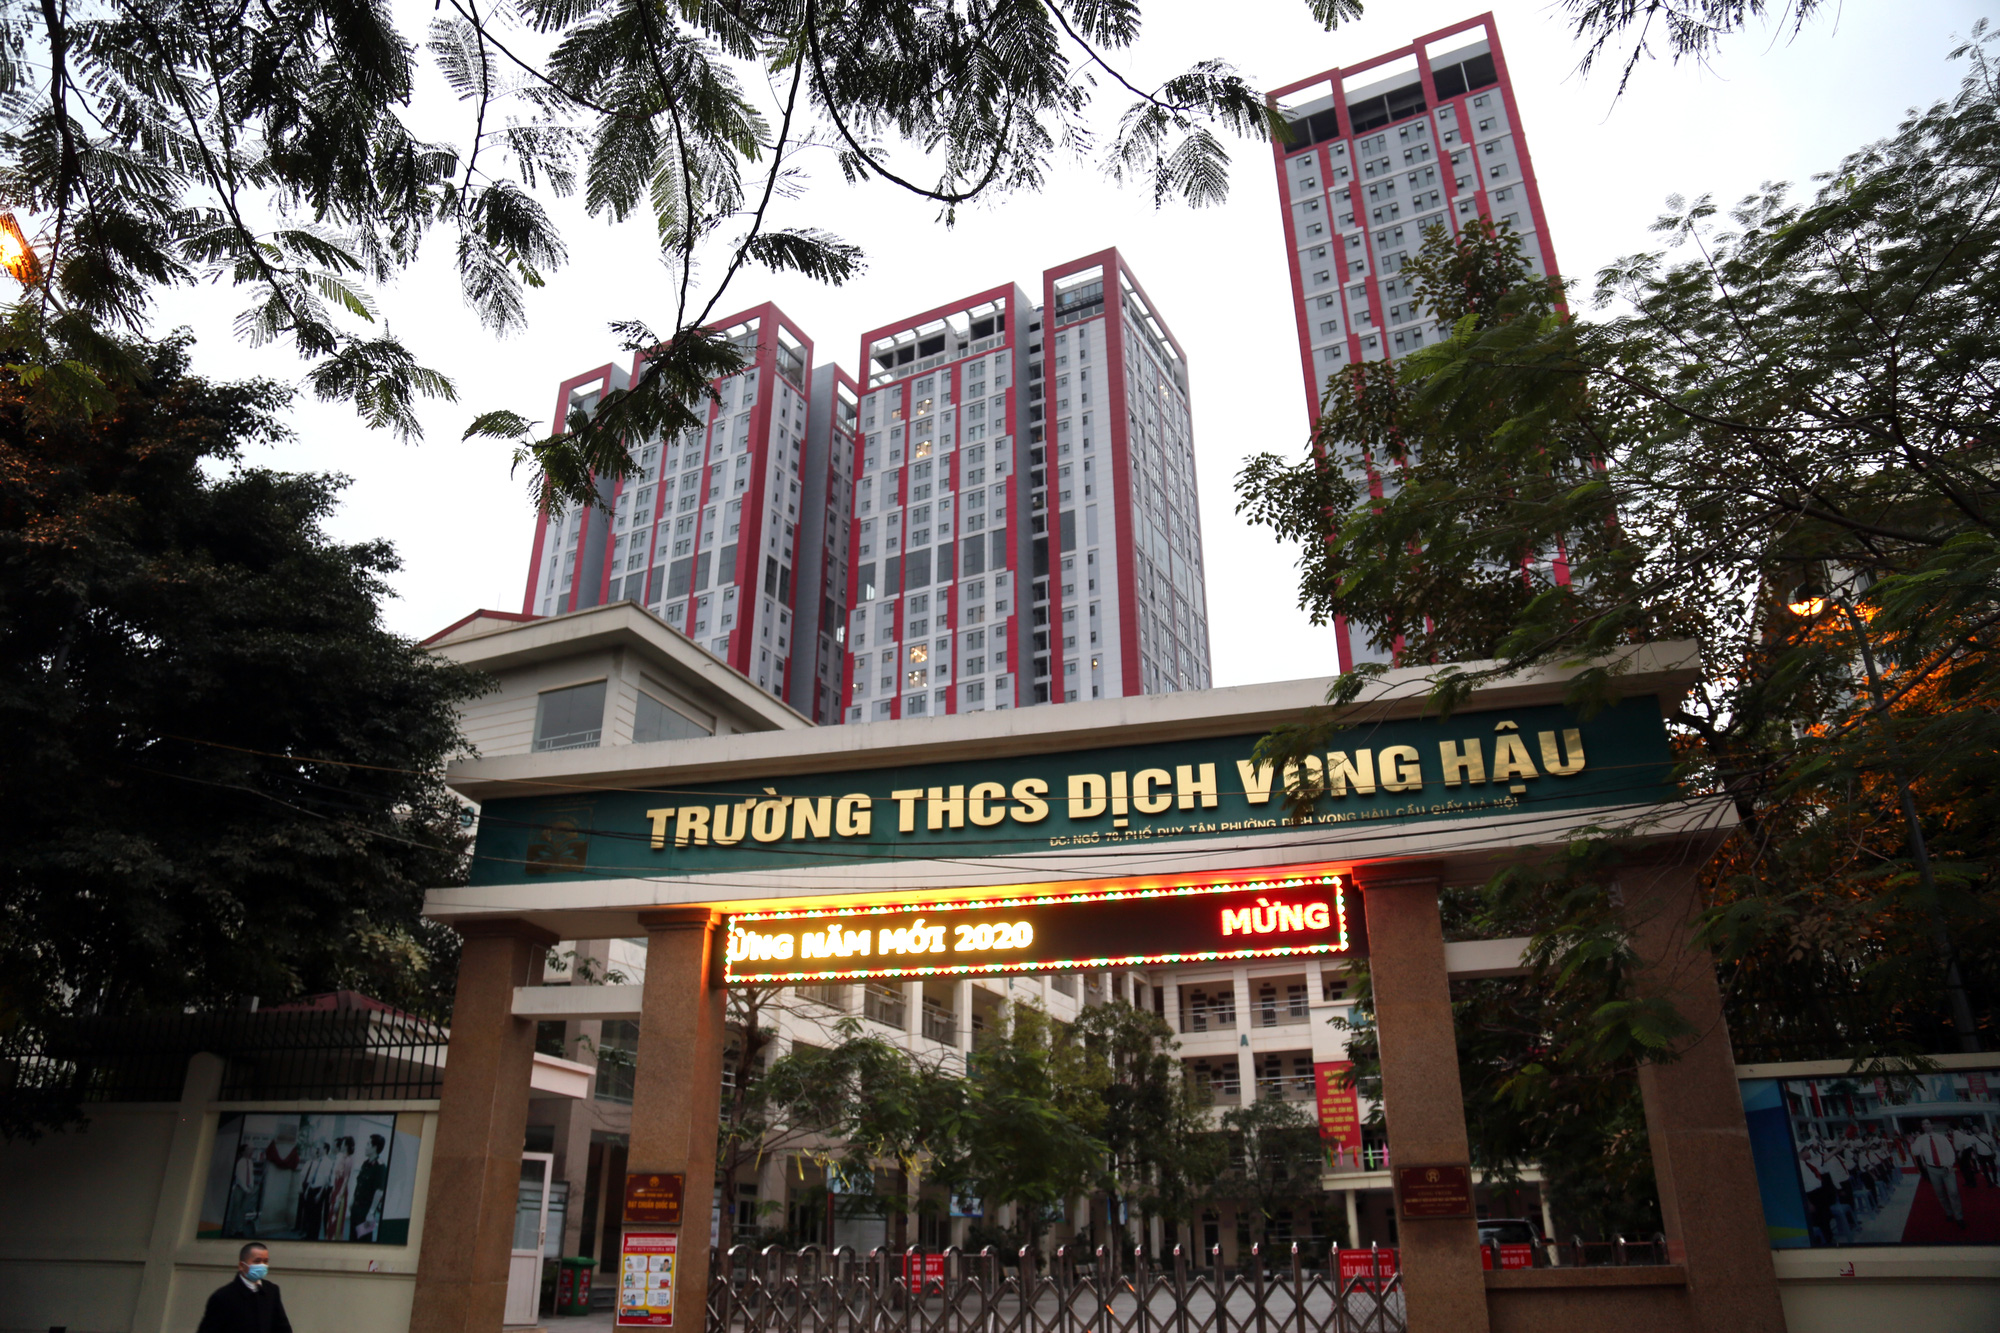 Dự án có vị trí rất gần với trường THCS Dịch Vọng Hậu. (Ảnh: Hồng Phong).